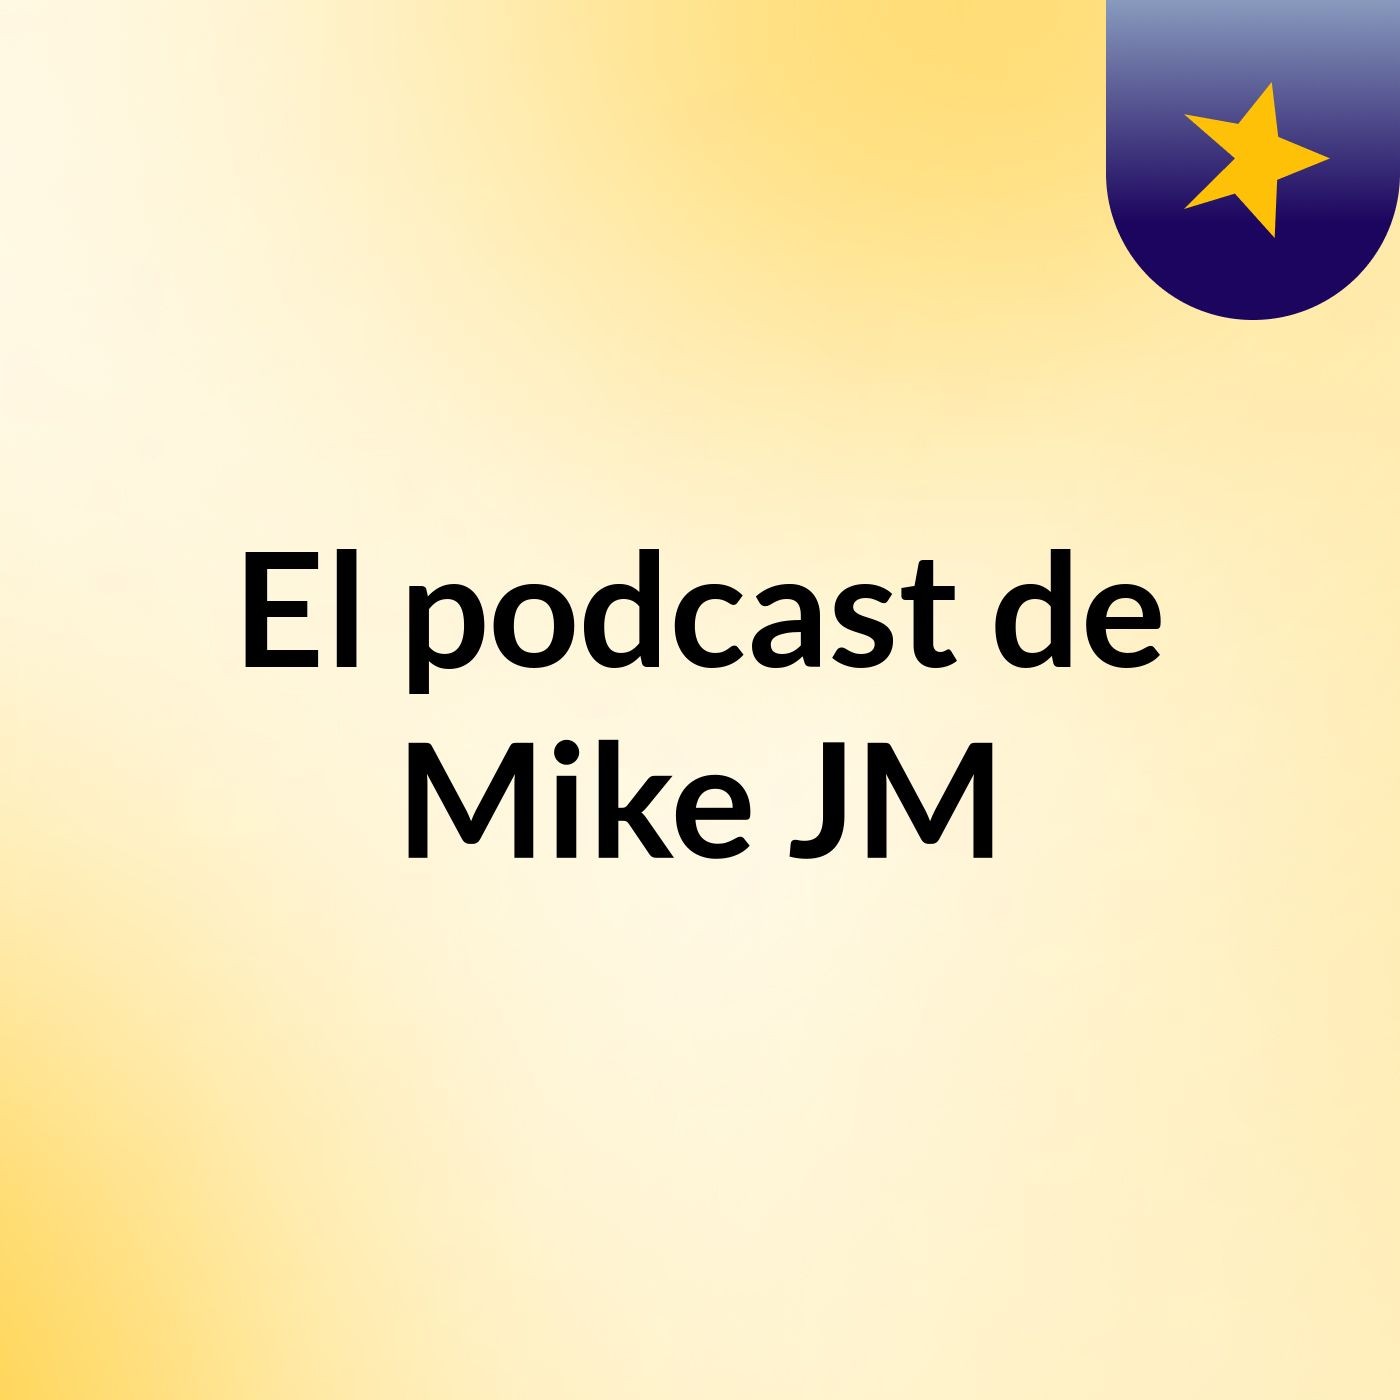 El podcast de Mike JM